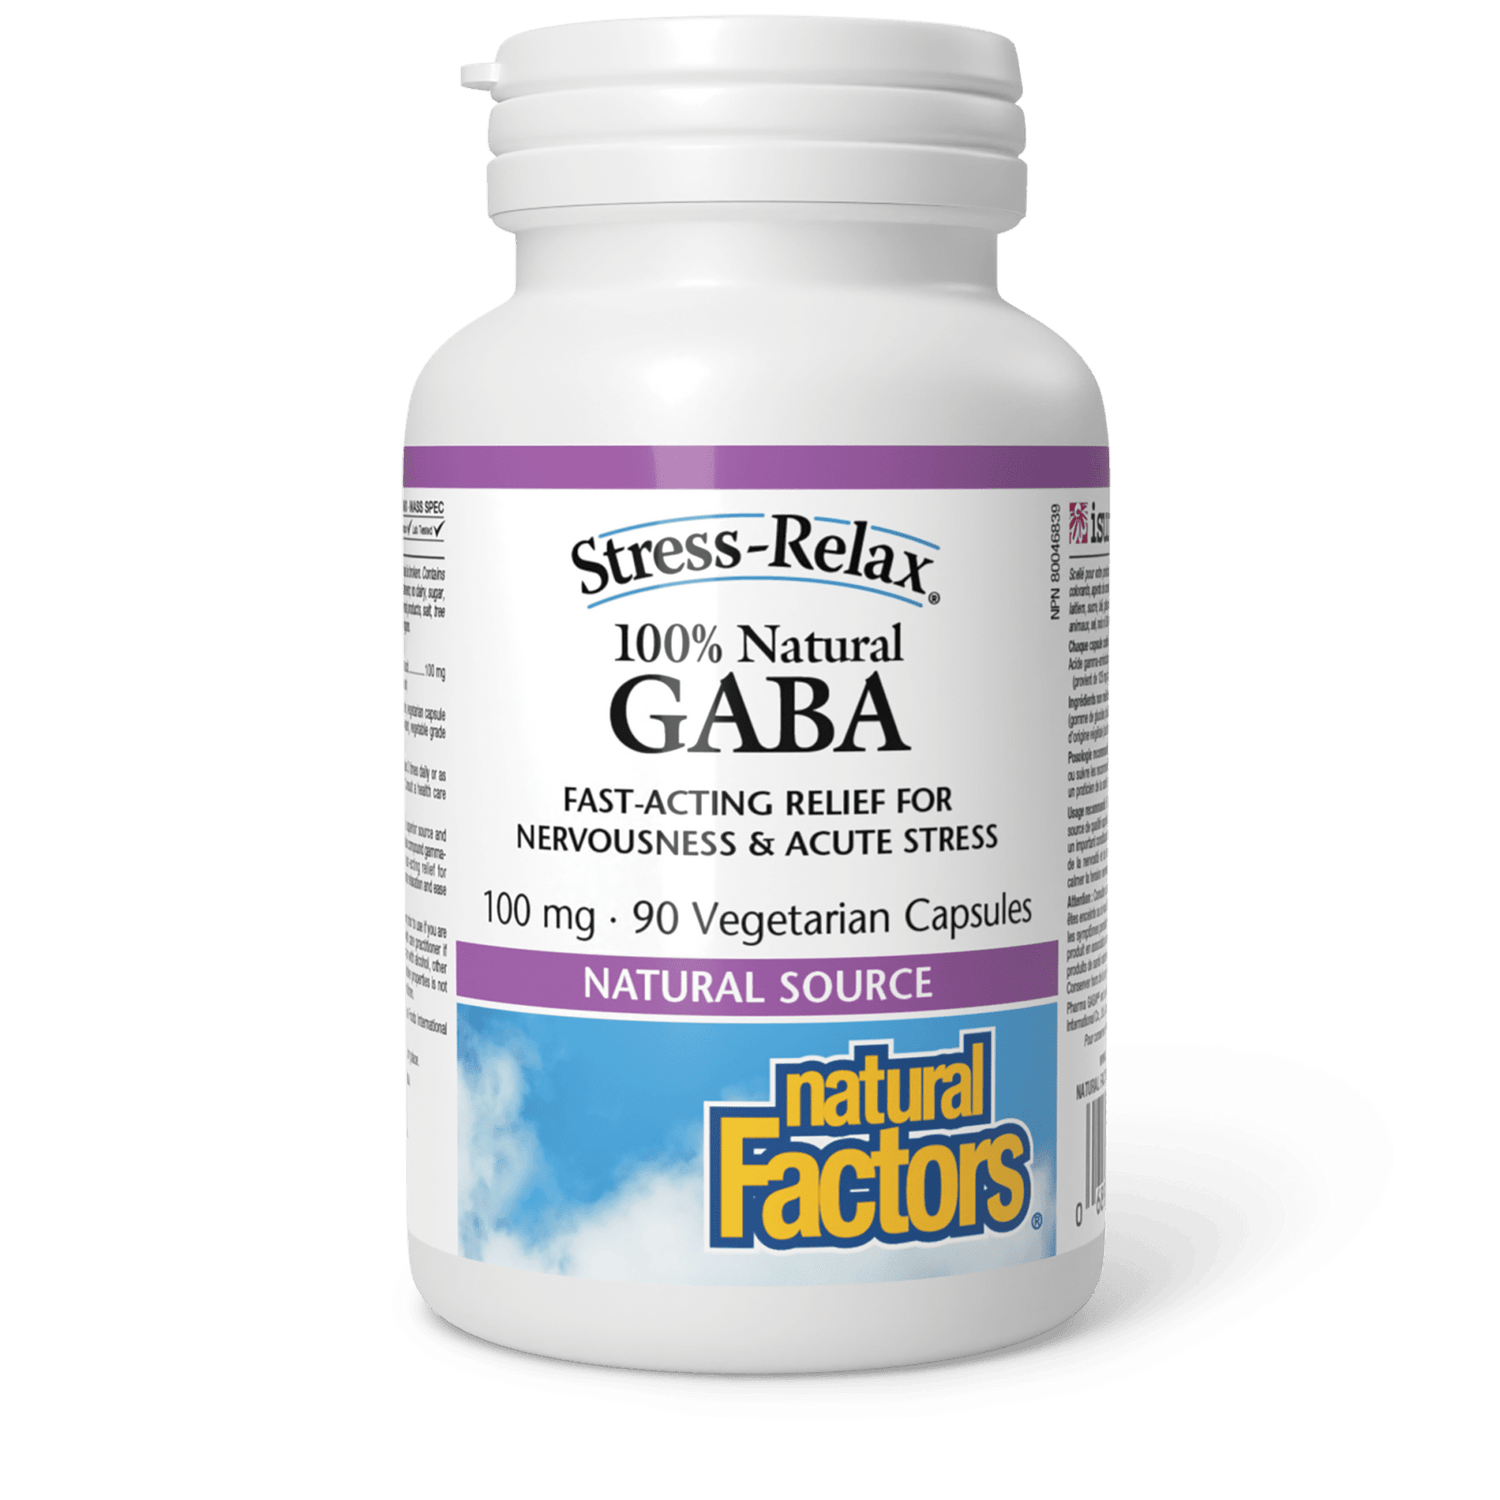 100% Natural GABA 100 mg, Stress-Relax, Natural Factors|v|image|2836